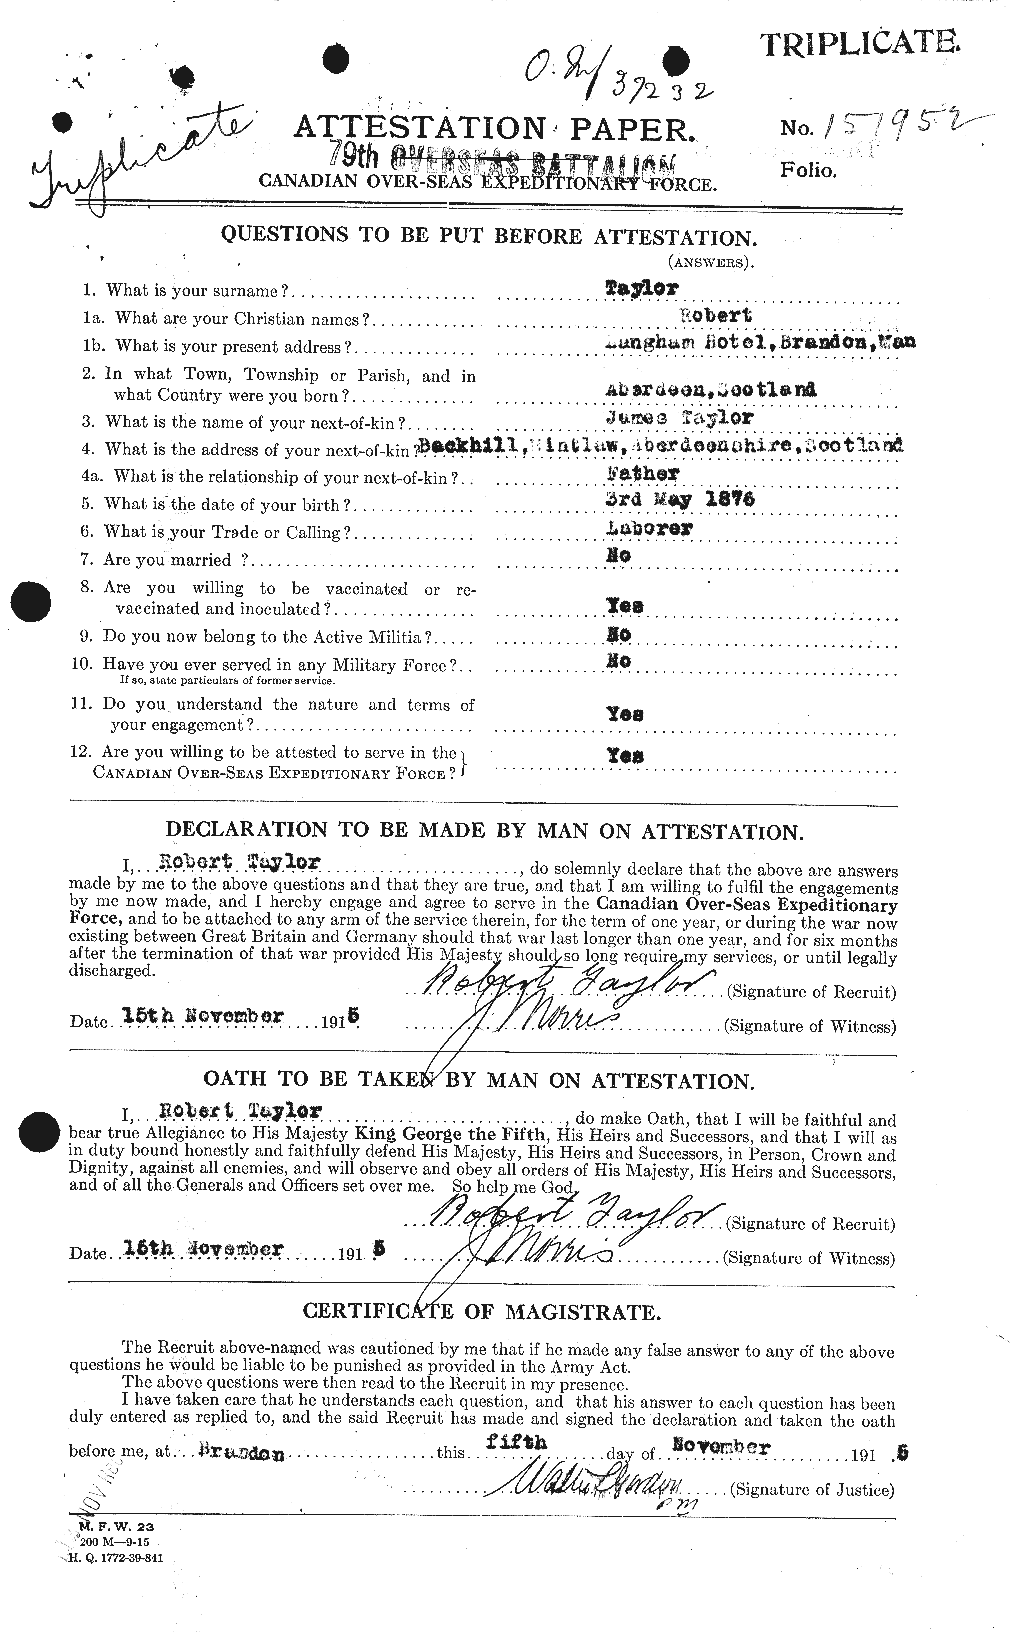 Dossiers du Personnel de la Première Guerre mondiale - CEC 627440a